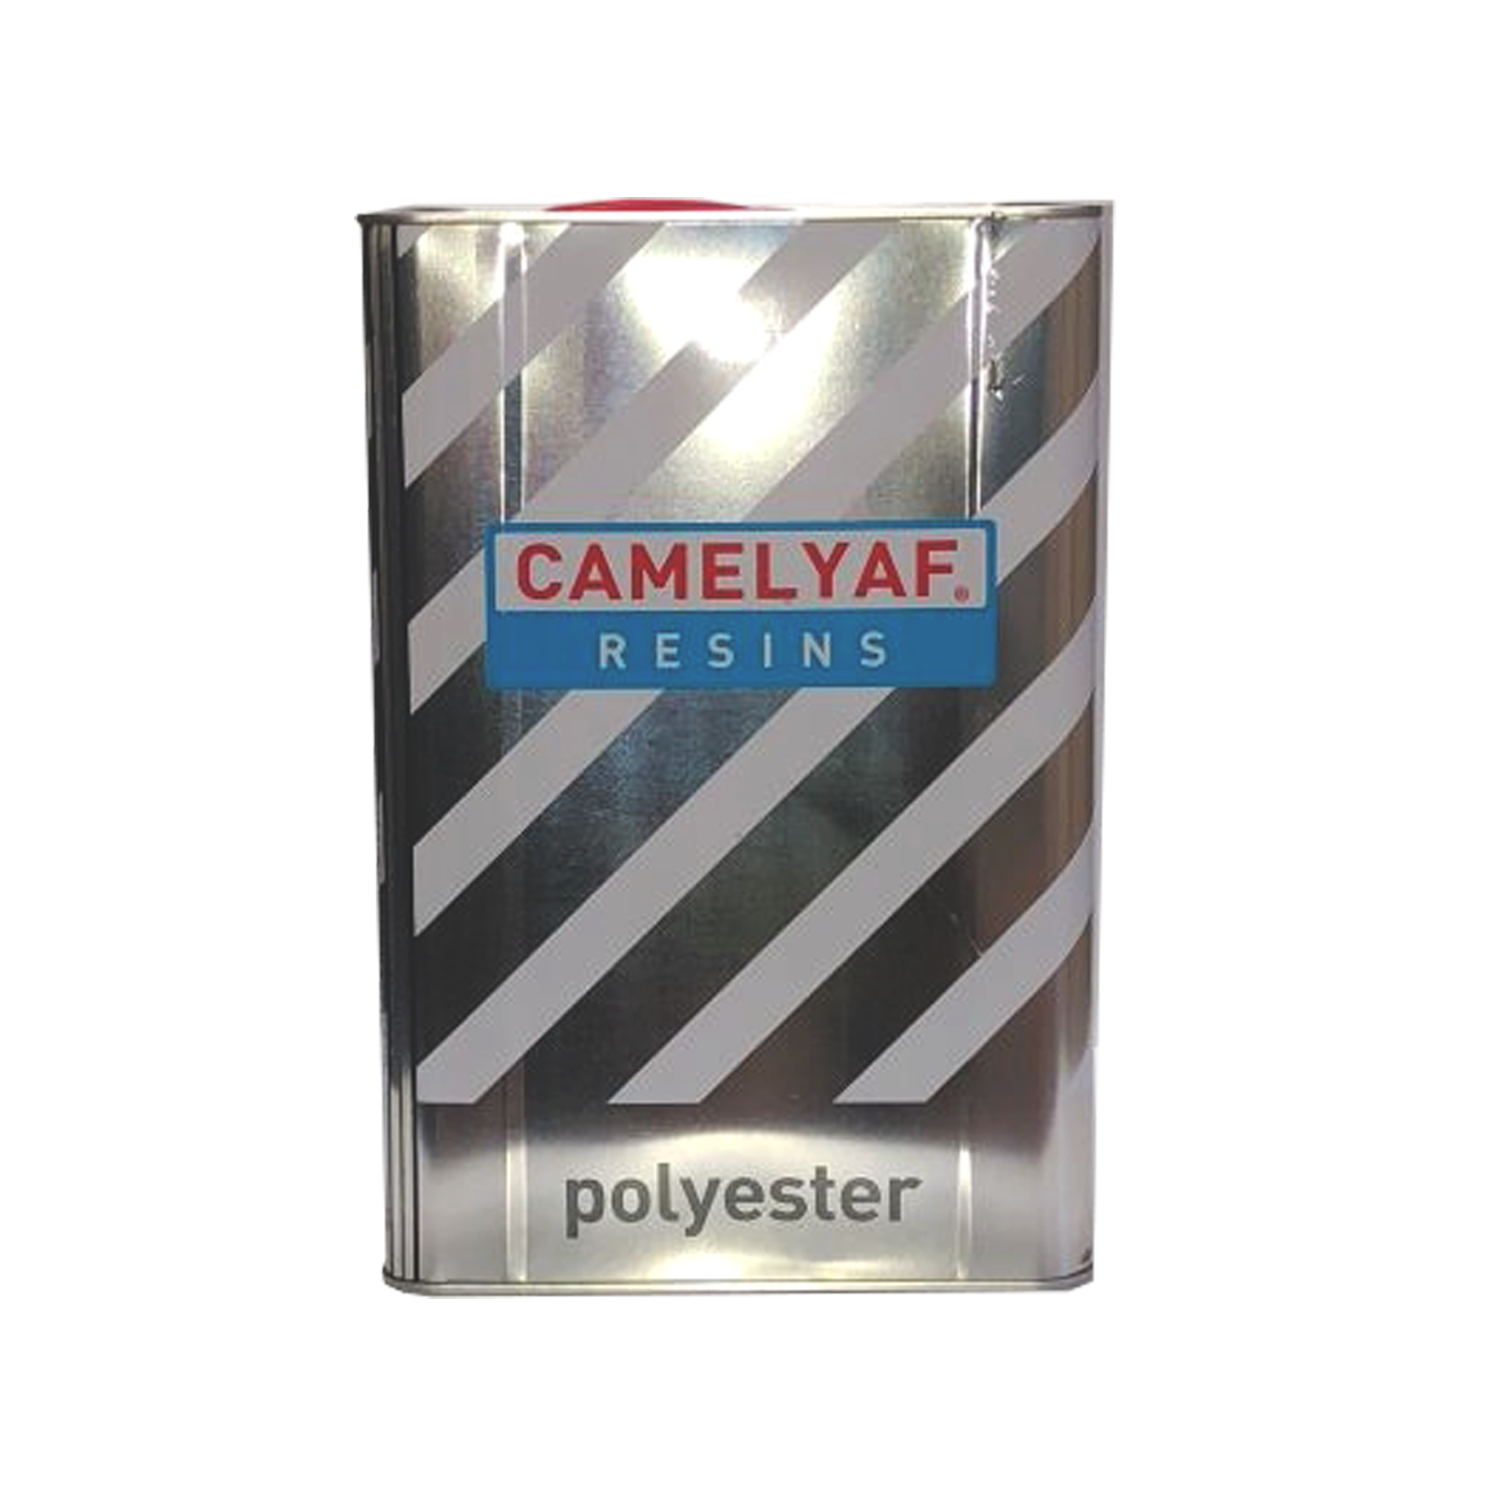 CAMELYAF CE 92 N8 CTP Tipi Polyester Reçine